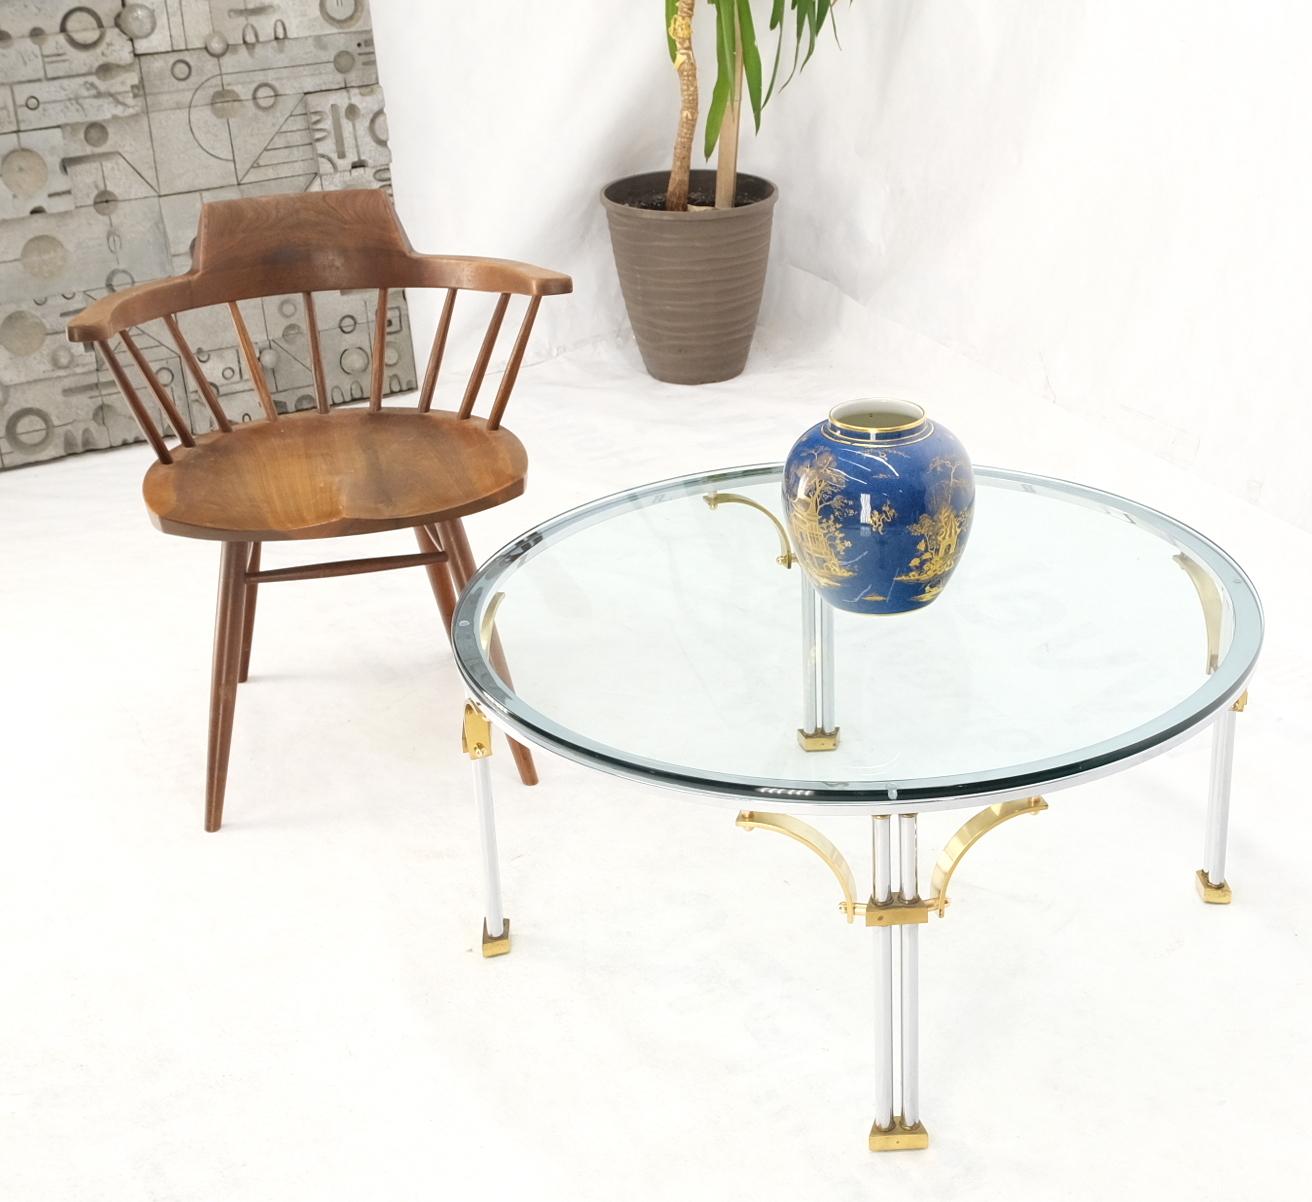 Table basse ronde avec plateau en verre, pieds chromés, brancards et pieds en laiton massif.